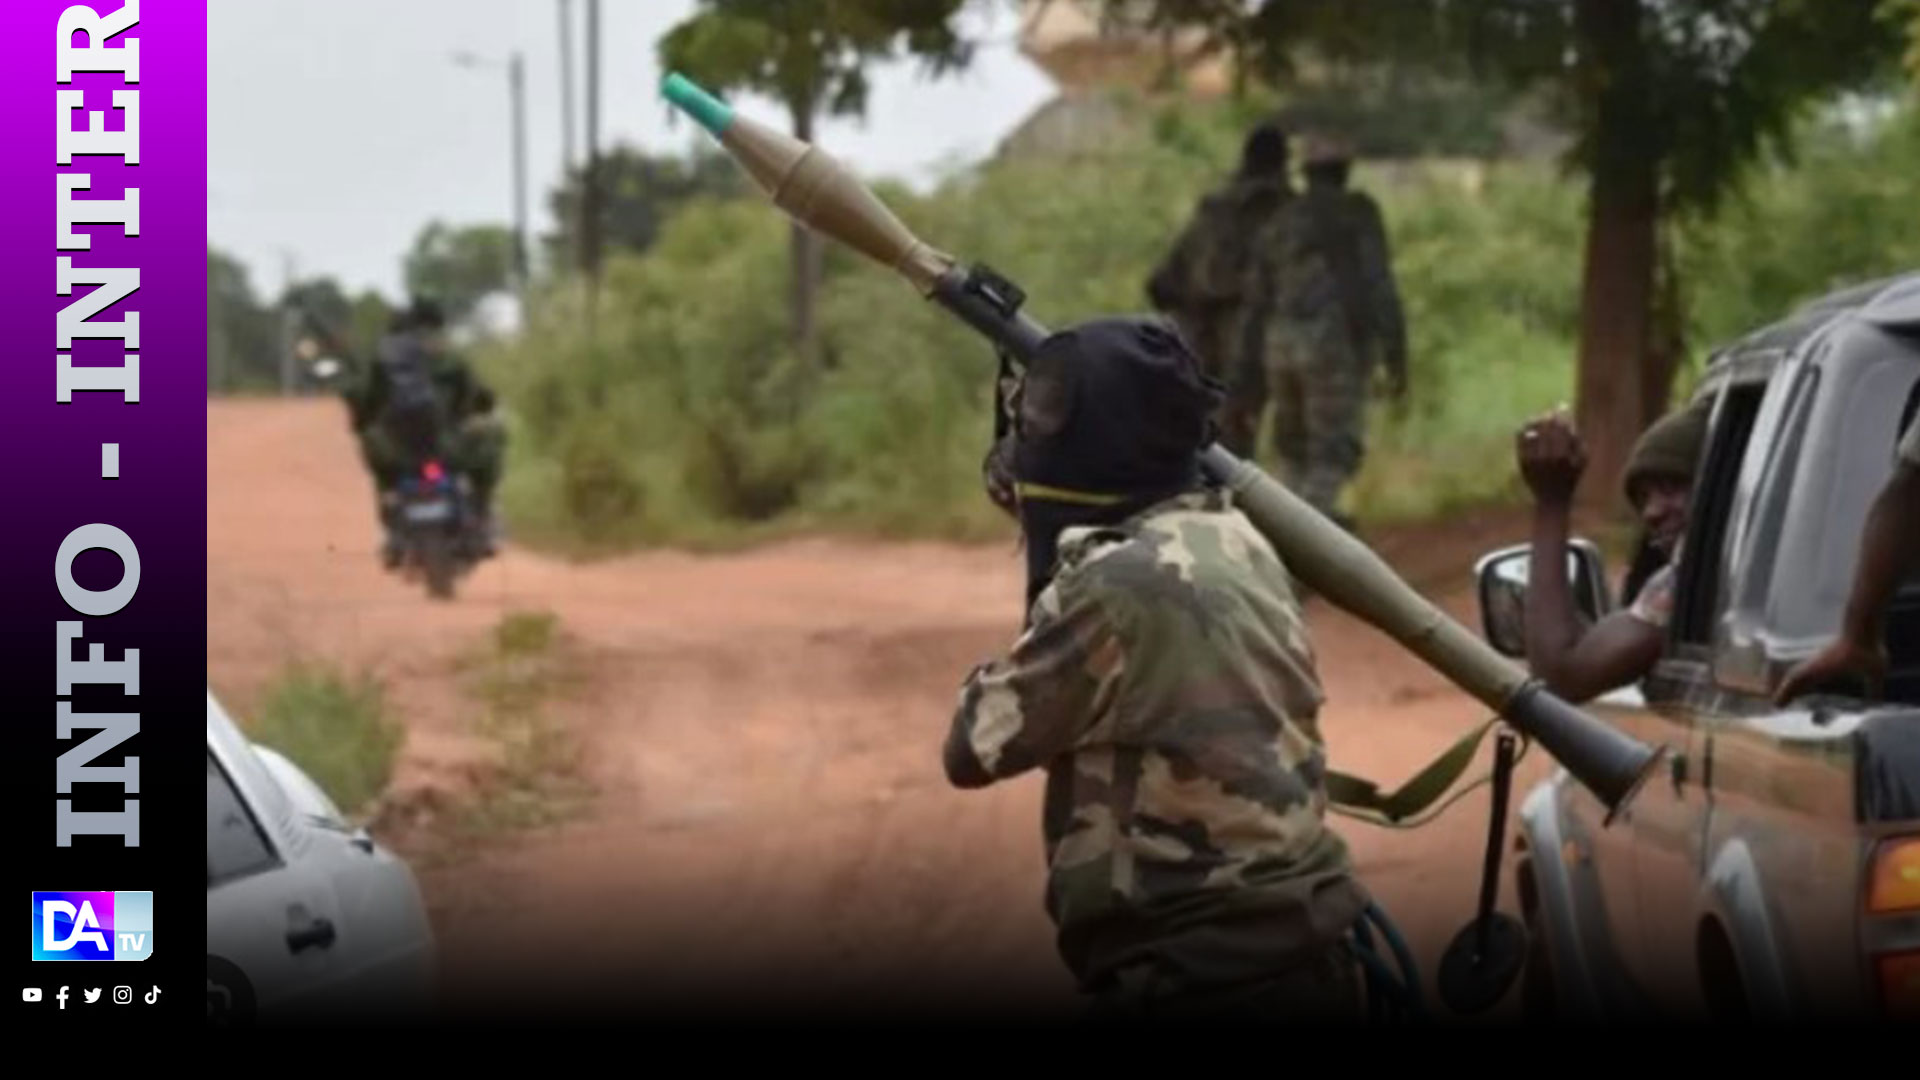 Côte d'Ivoire: de 2019 à 2021, enrichissement de jihadistes grâce au trafic, selon un rapport